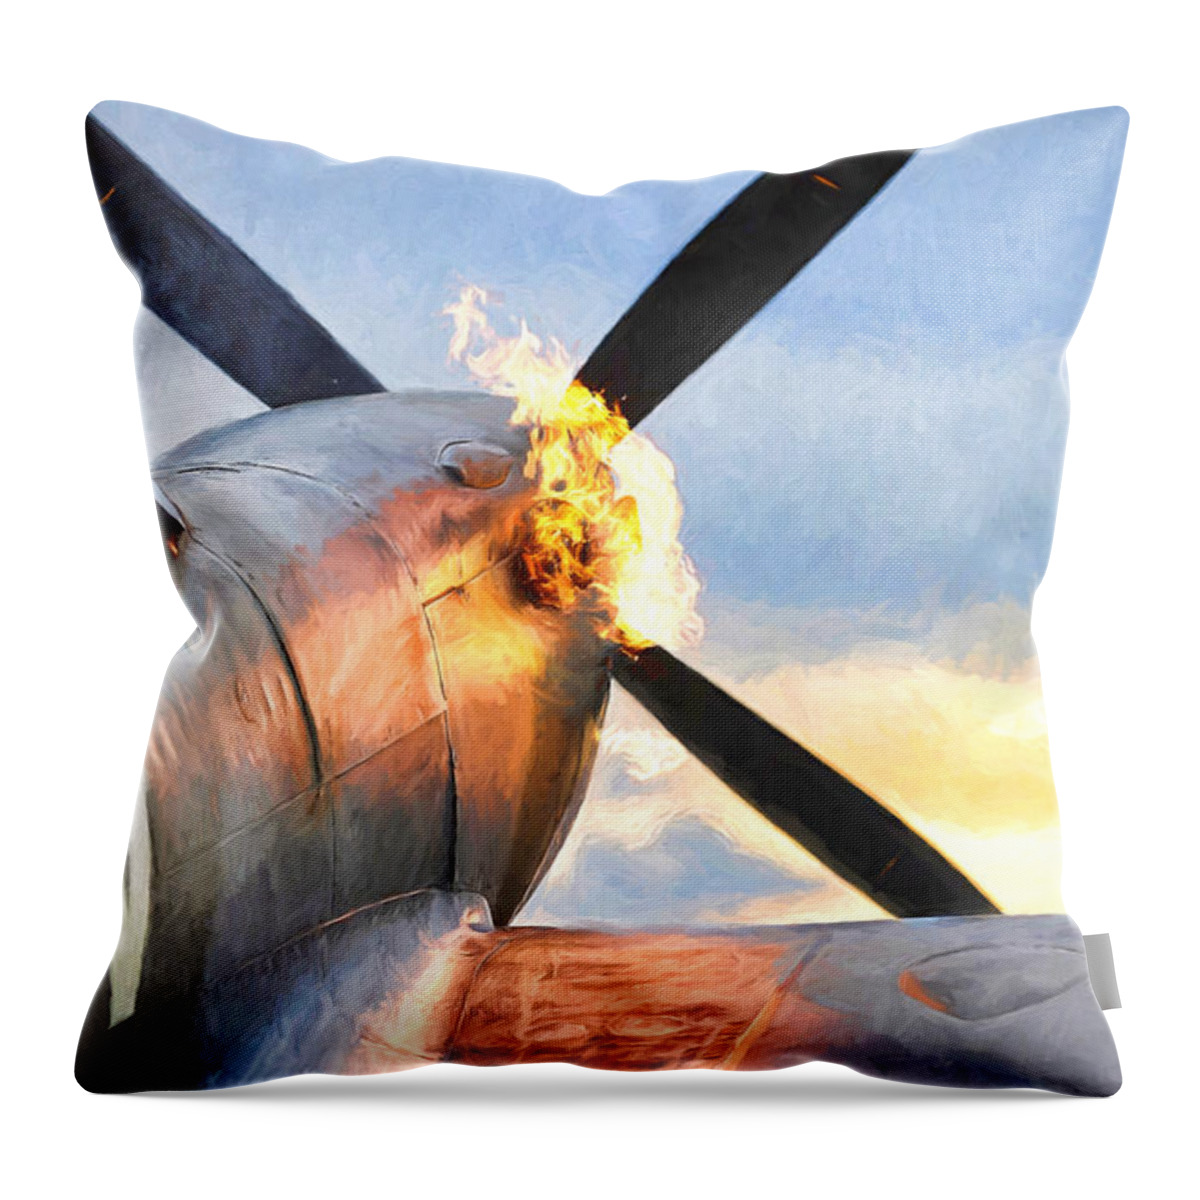 Bbmf Throw Pillow featuring the digital art Spitfire Hot Start 2 by Roy Pedersen